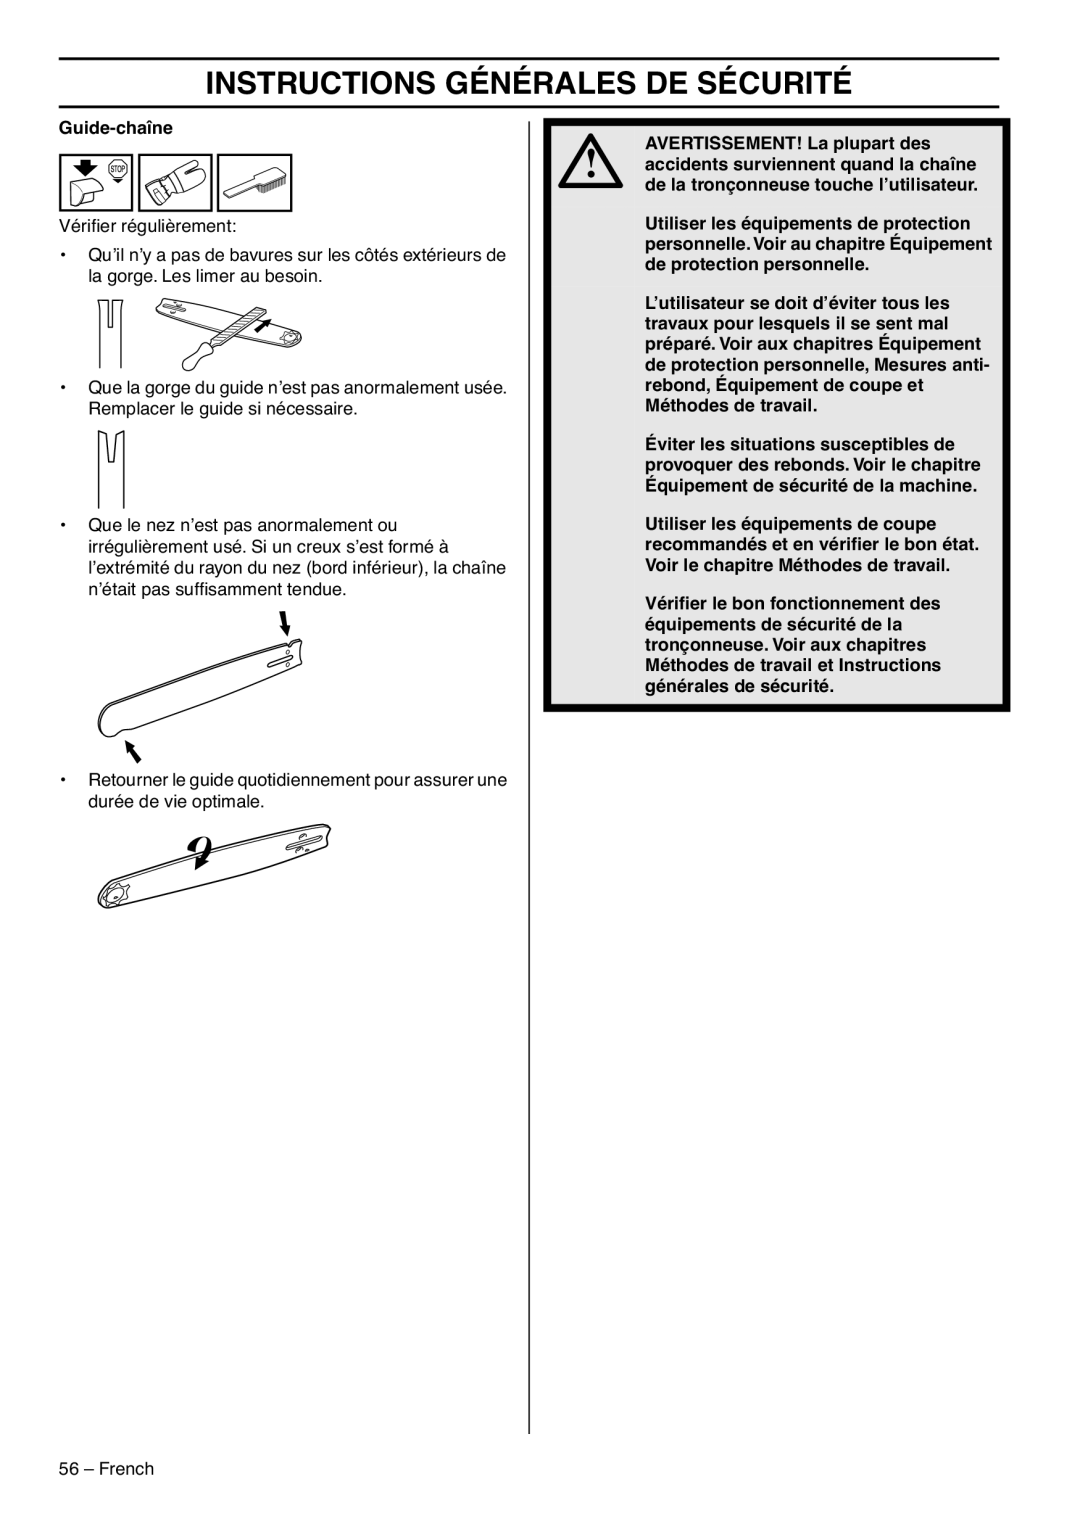 RedMax GZ7000 manual Instructions Générales De Sécurité, Vériﬁer régulièrement 